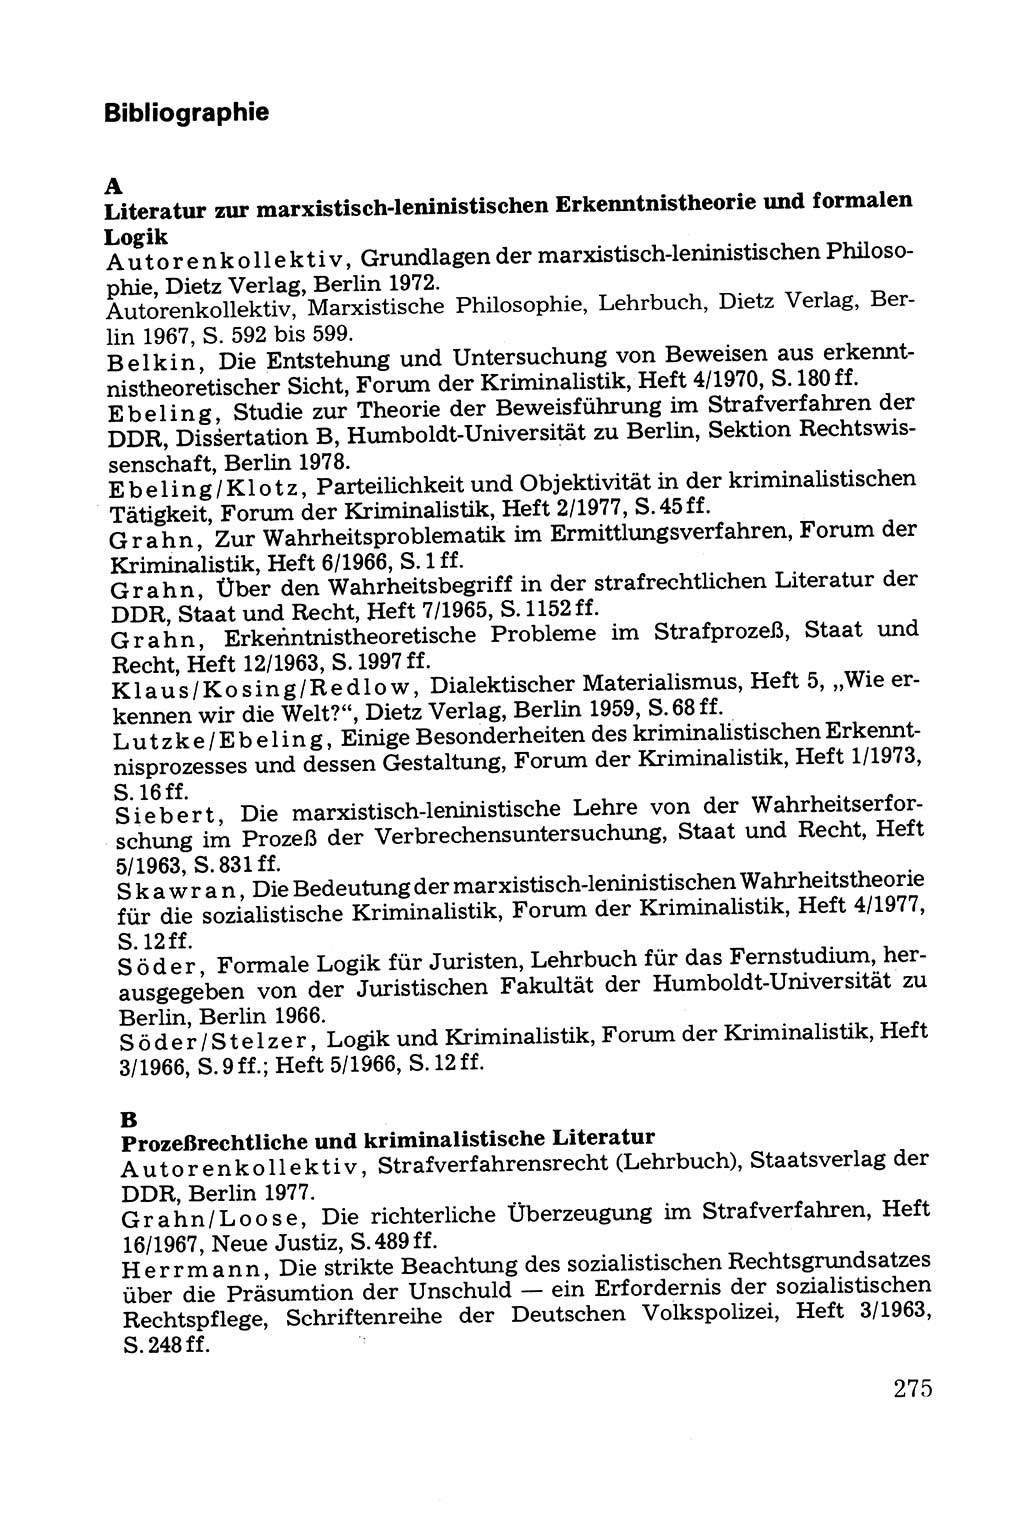 Grundfragen der Beweisführung im Ermittlungsverfahren [Deutsche Demokratische Republik (DDR)] 1980, Seite 275 (Bws.-Fhrg. EV DDR 1980, S. 275)